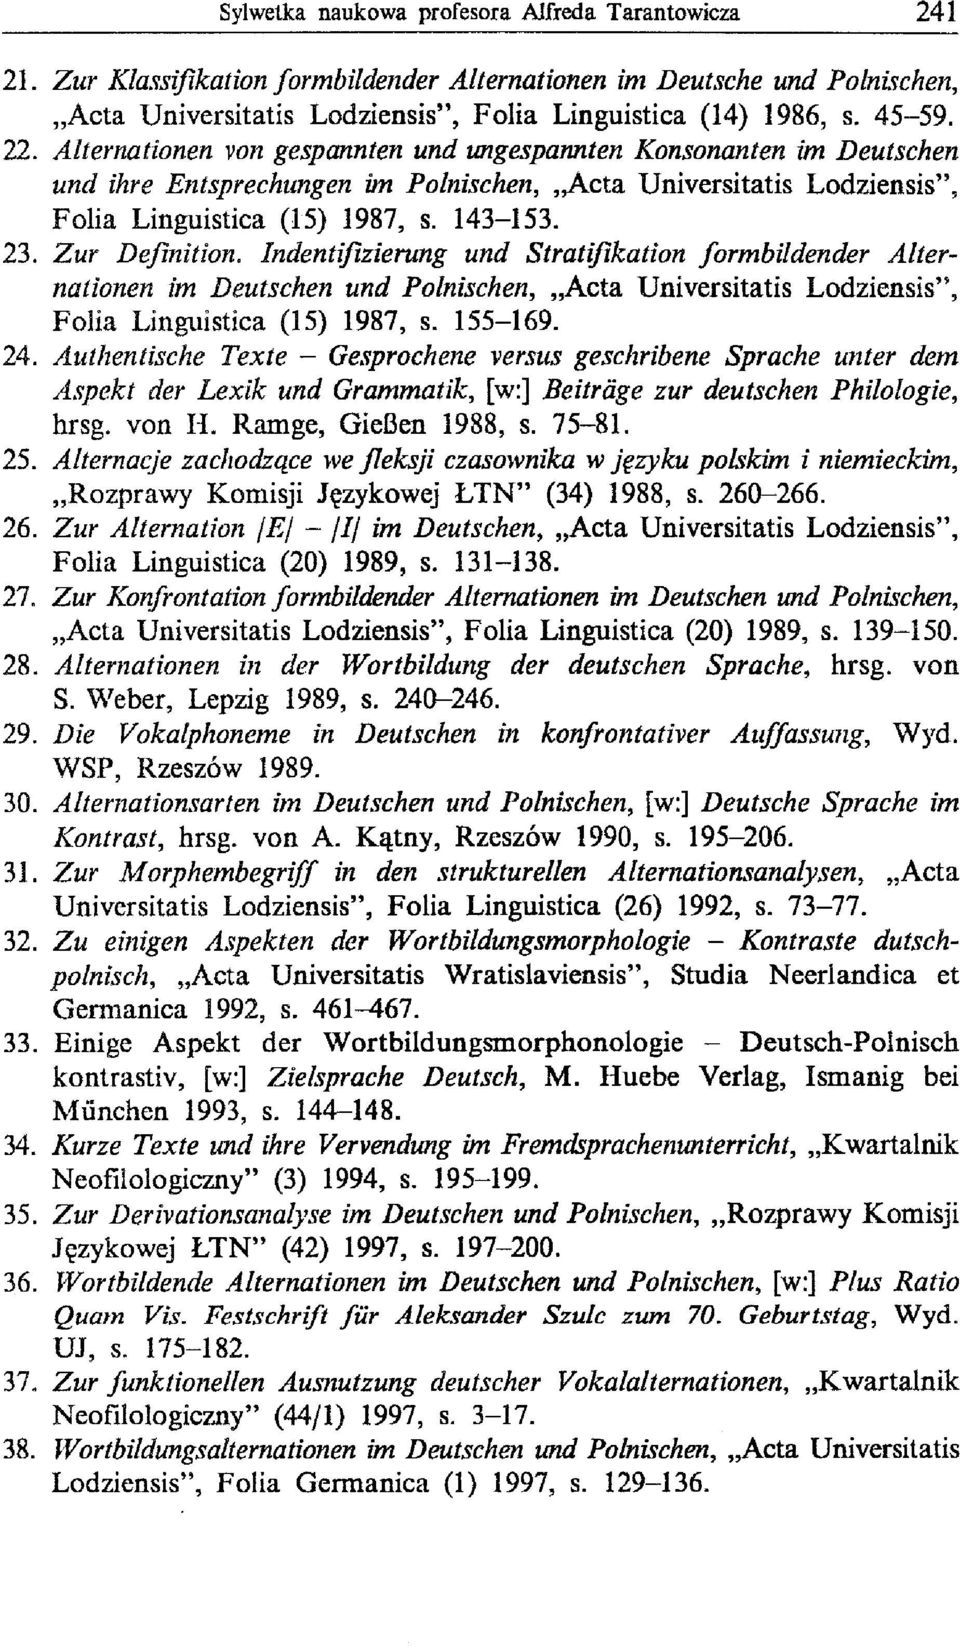 Zur Definition. lndentifizierung und Stratifikation formbildender Alternationen im Deutschen und Polnischen, "Acta Universitatis Lodziensis", Folia Linguistica (15) 1987, s. 155-169. 24.